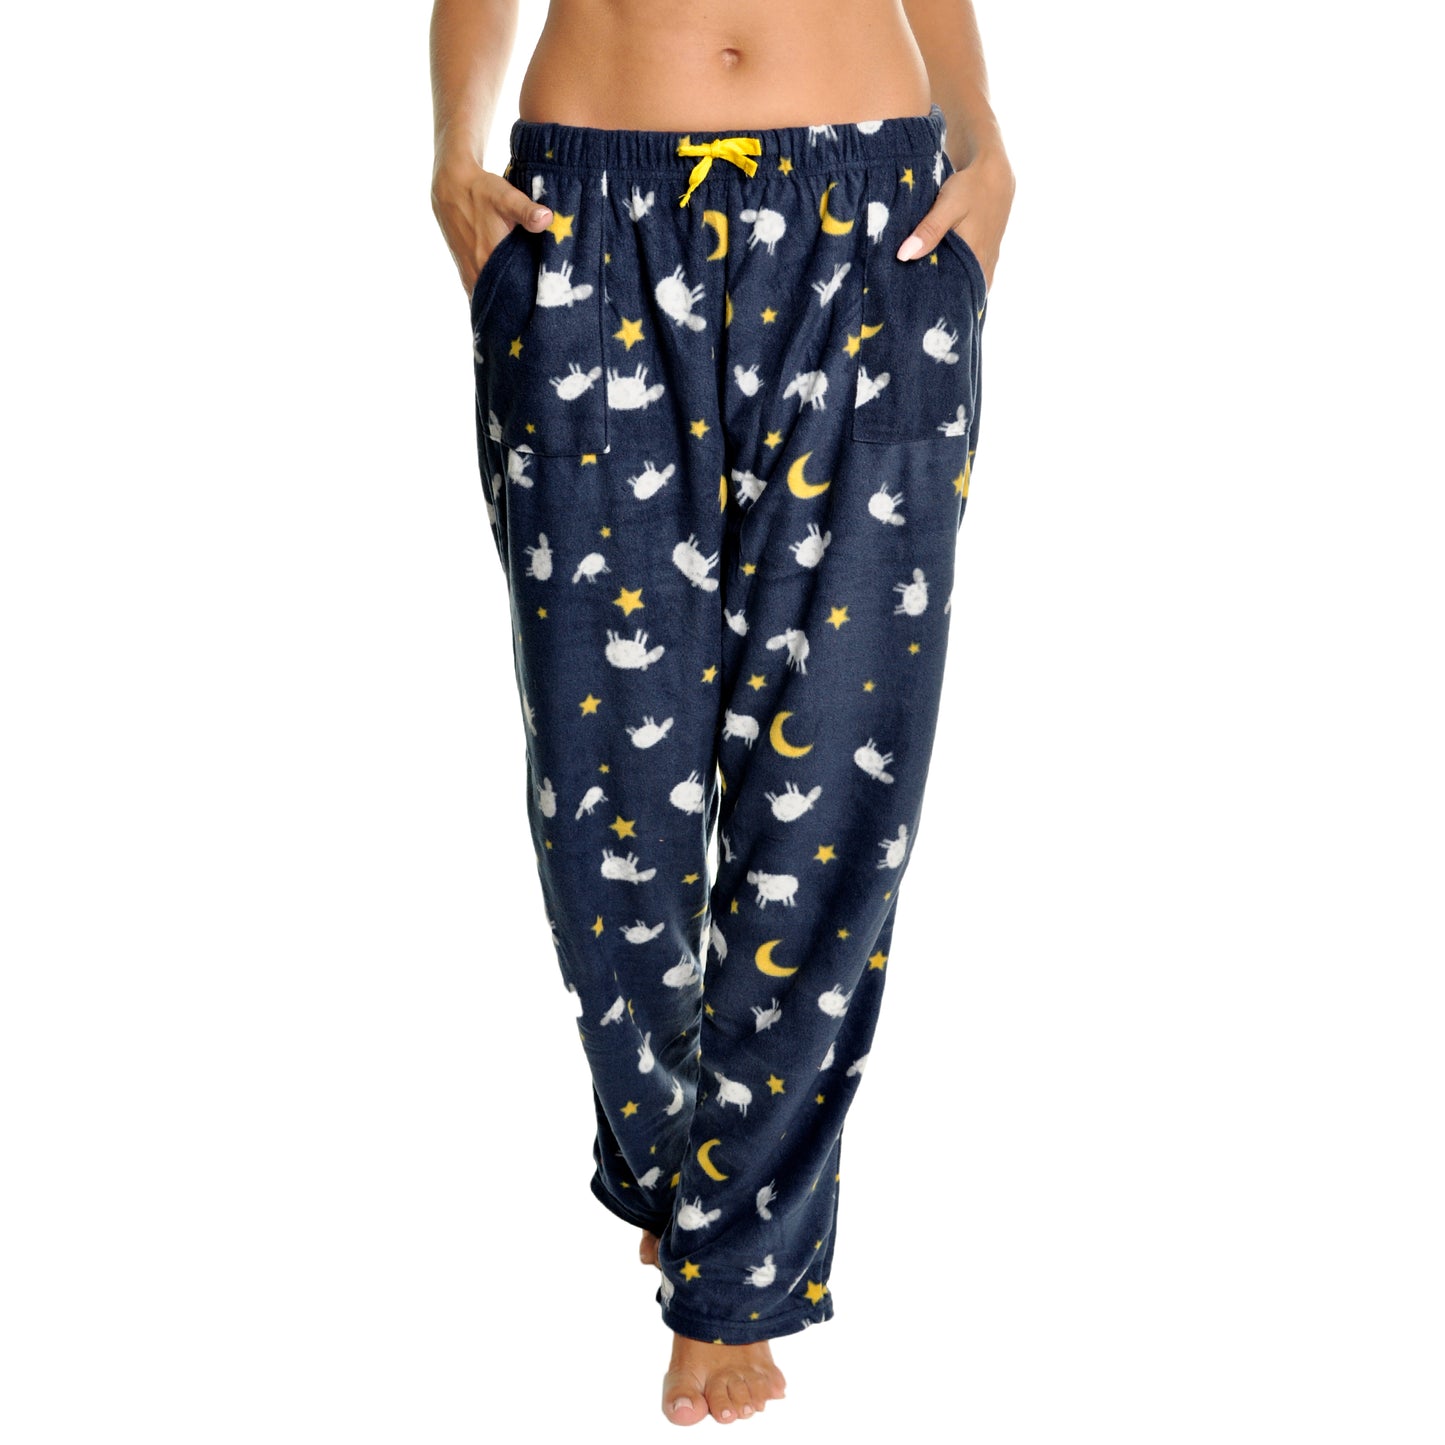 Women's COZY Fleece Pajama Pants (1-Pack)